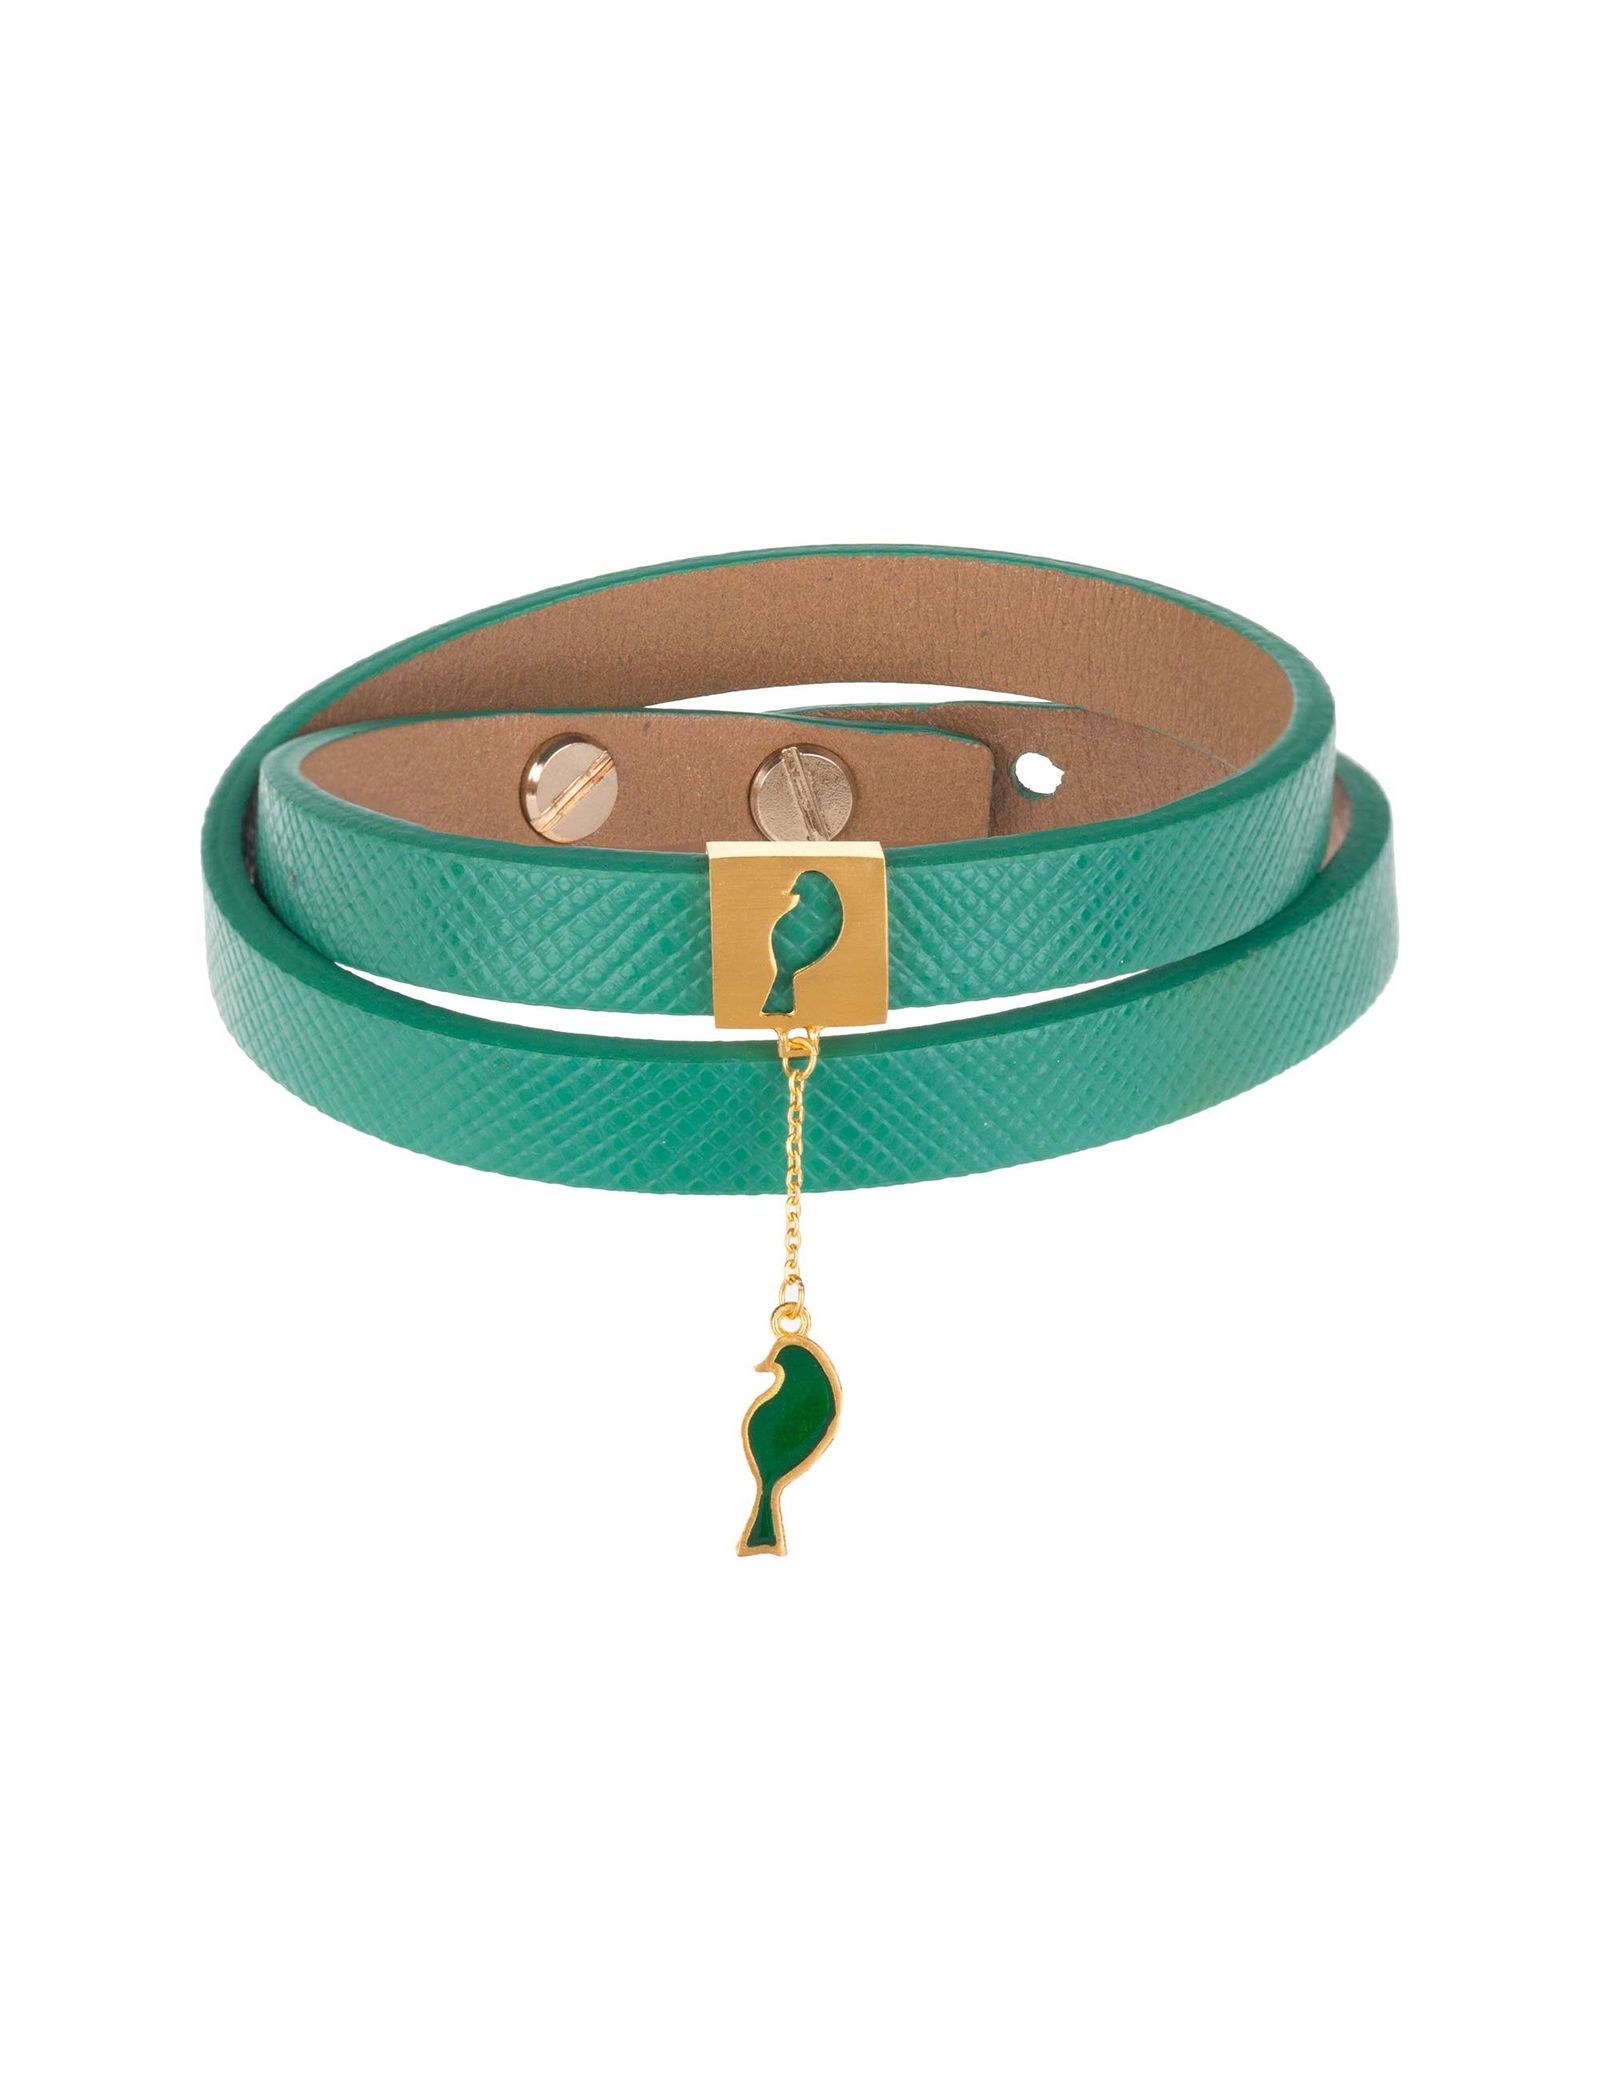 دستبند طلا زنانه - درسا - سبز - 2